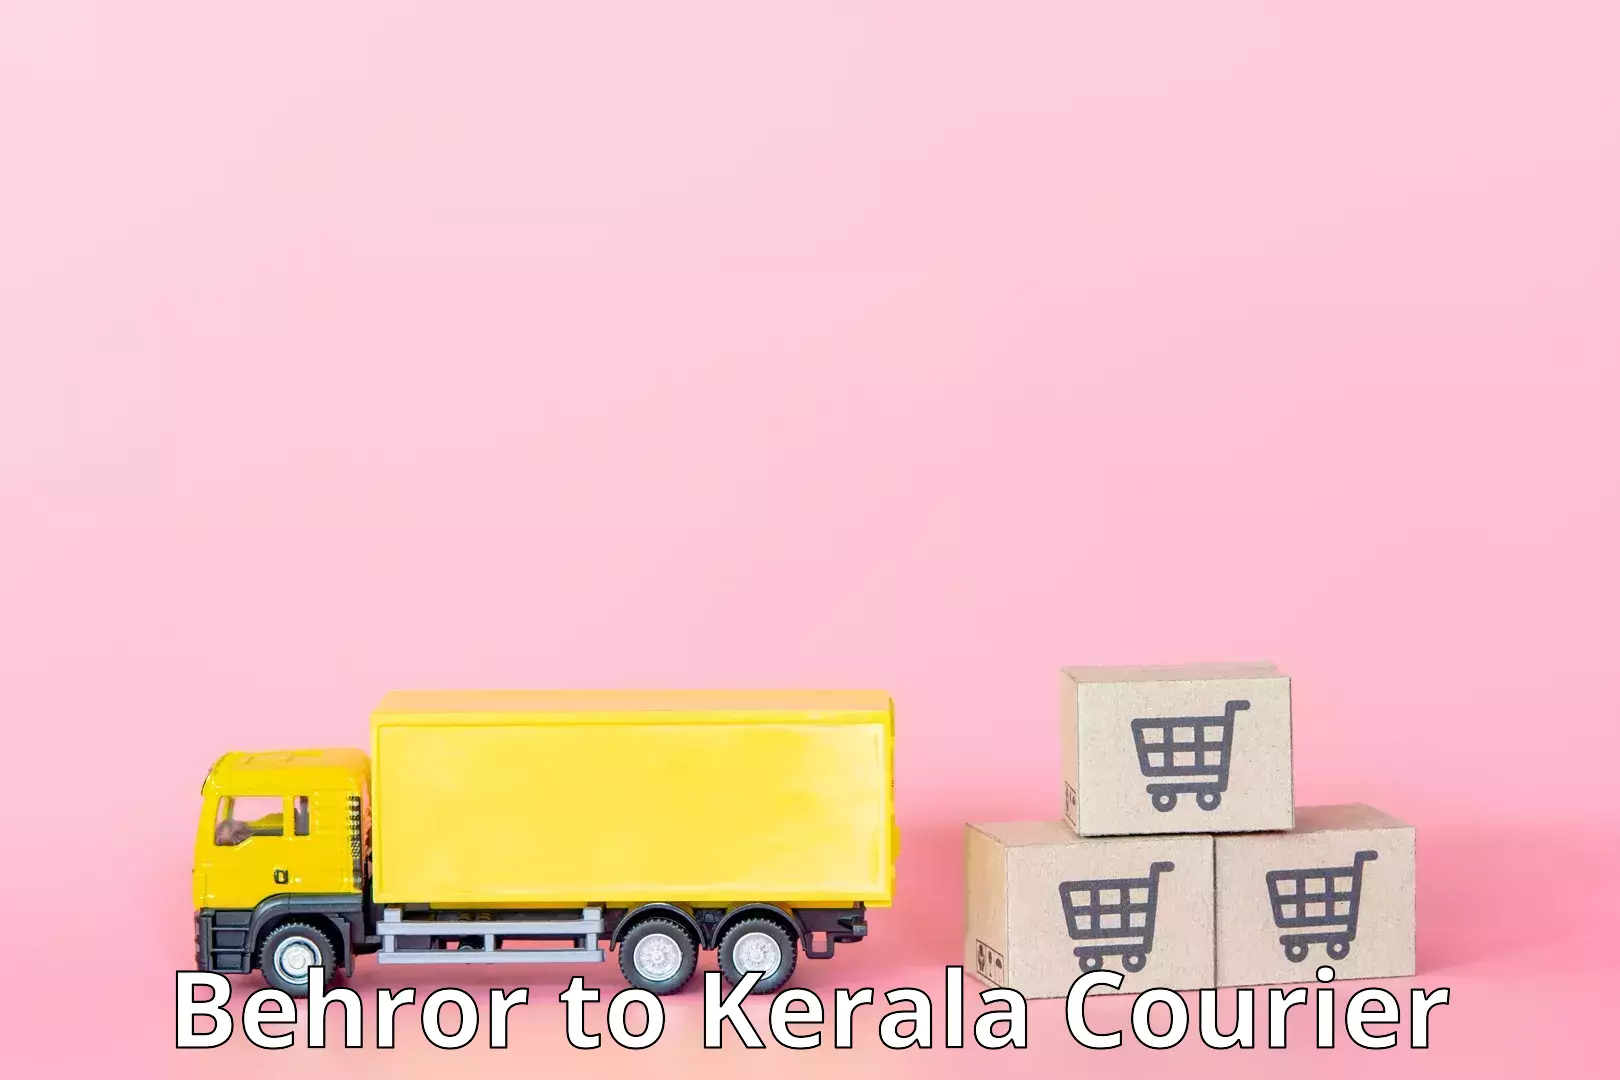 Cargo delivery service Behror to Kerala